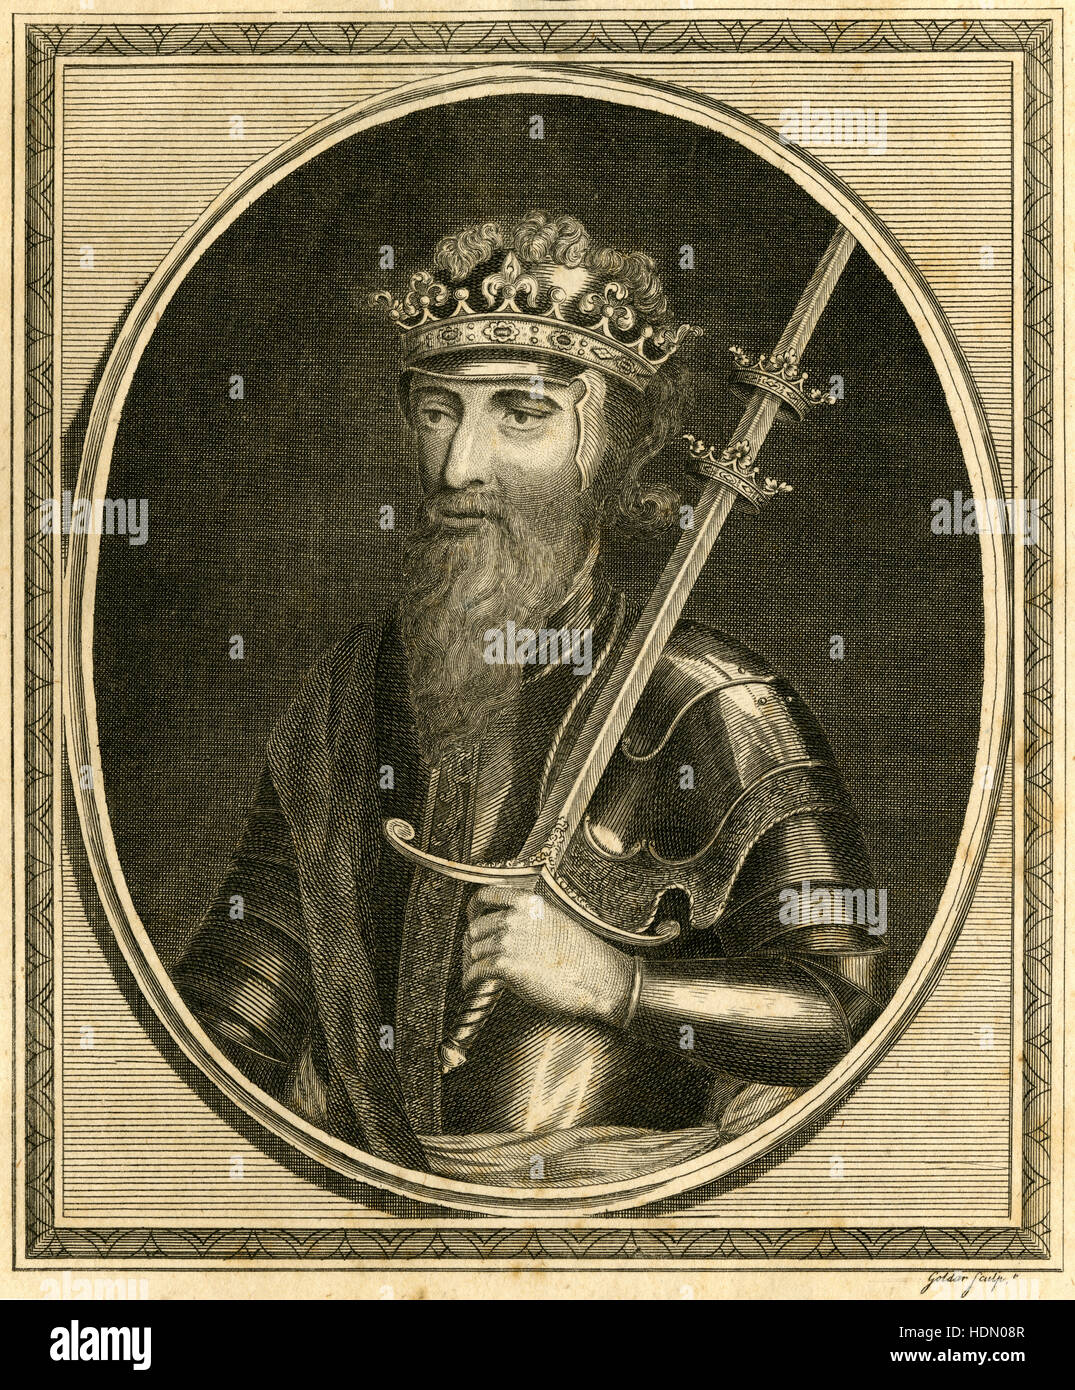 Antica incisione 1785, King Edward III. Edward III (1312-1377) era re d'Inghilterra dal 25 gennaio 1327 fino alla sua morte; egli è nota per il suo successo militare e per il ripristino di autorità reale dopo la disastrosa e ortodosso, regno di suo padre Edward II. Fonte: incisione originale. Foto Stock